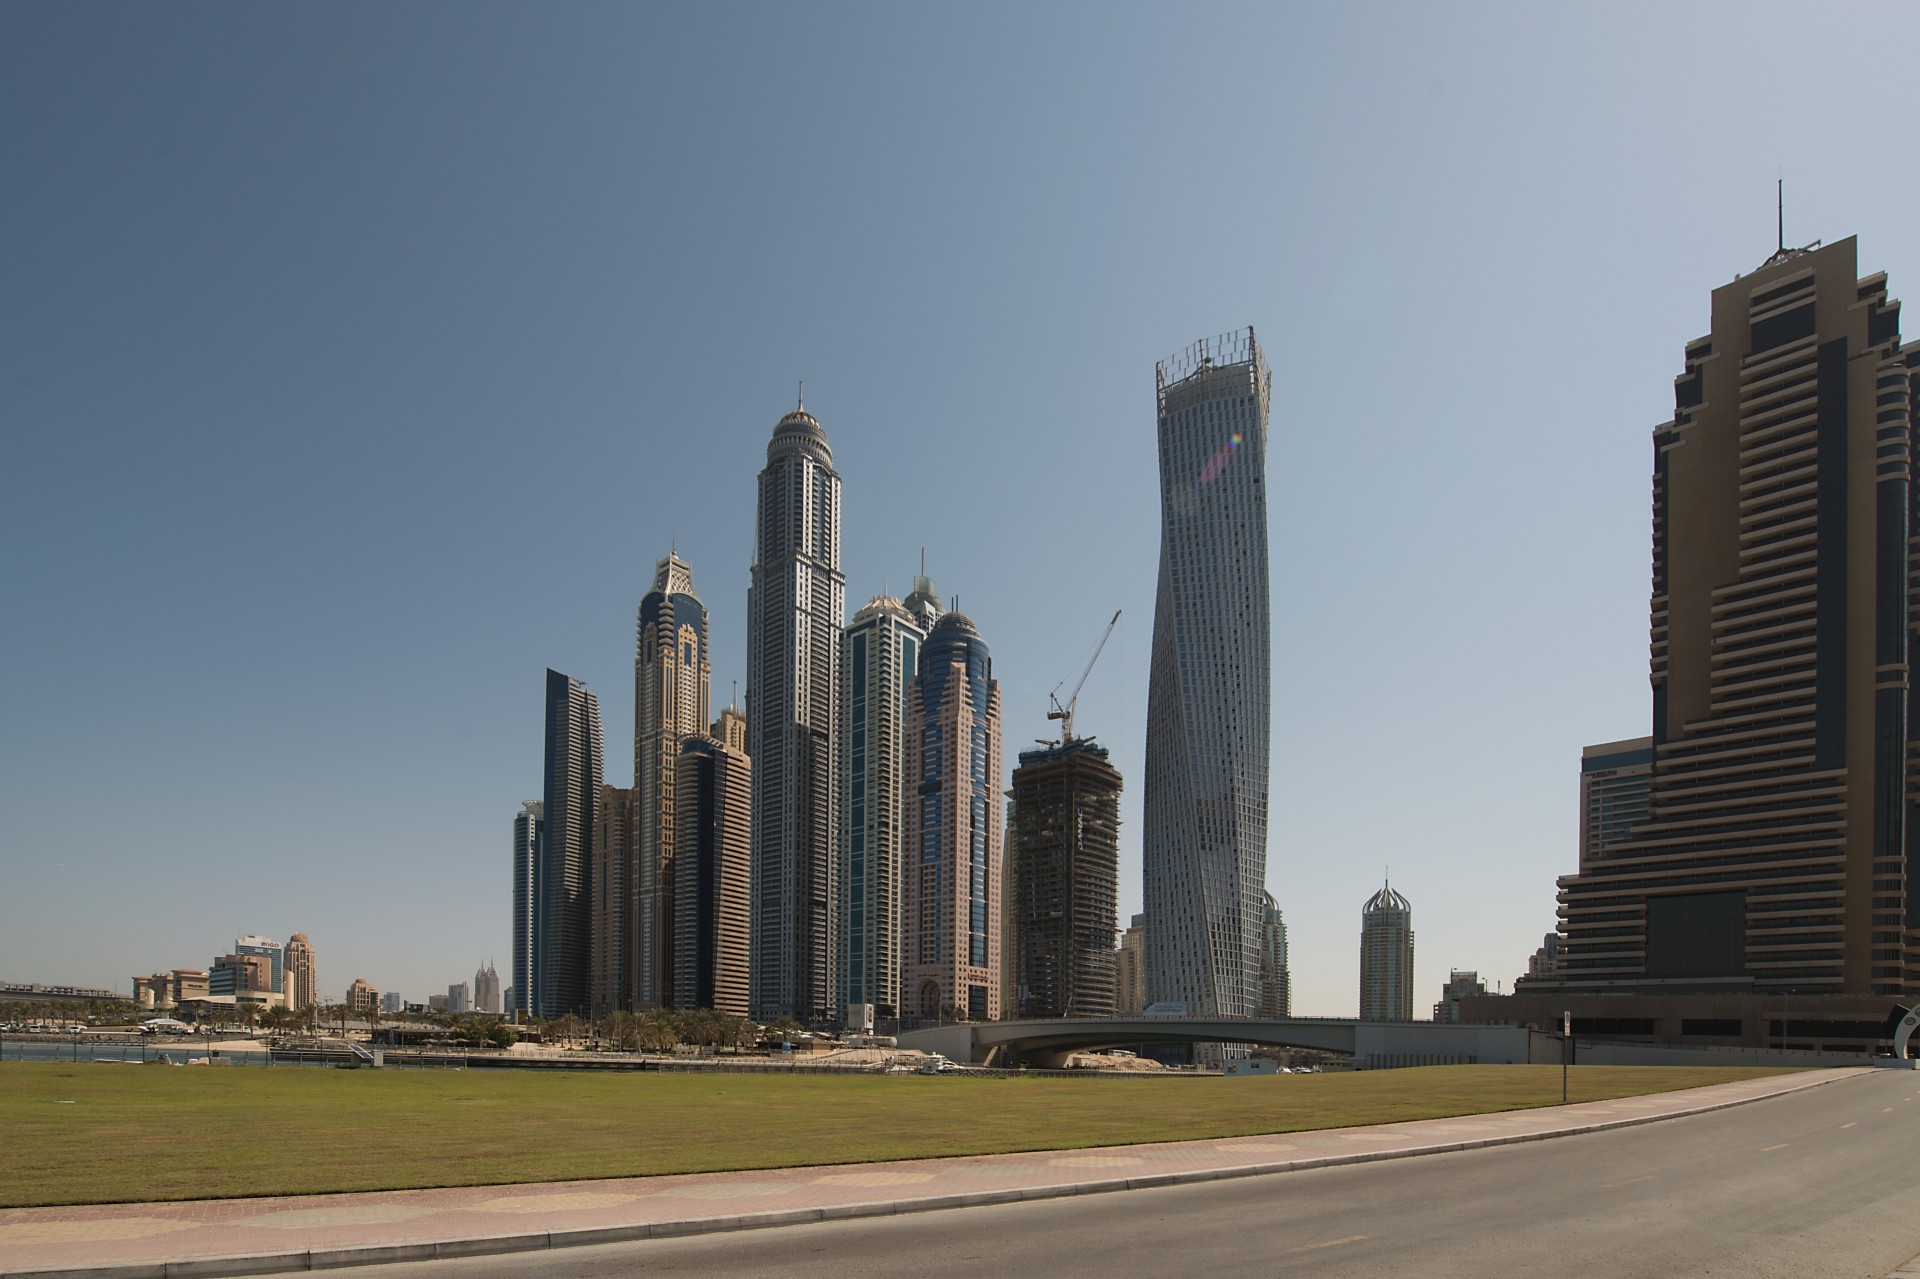 Wolkenkratzer in Dubai